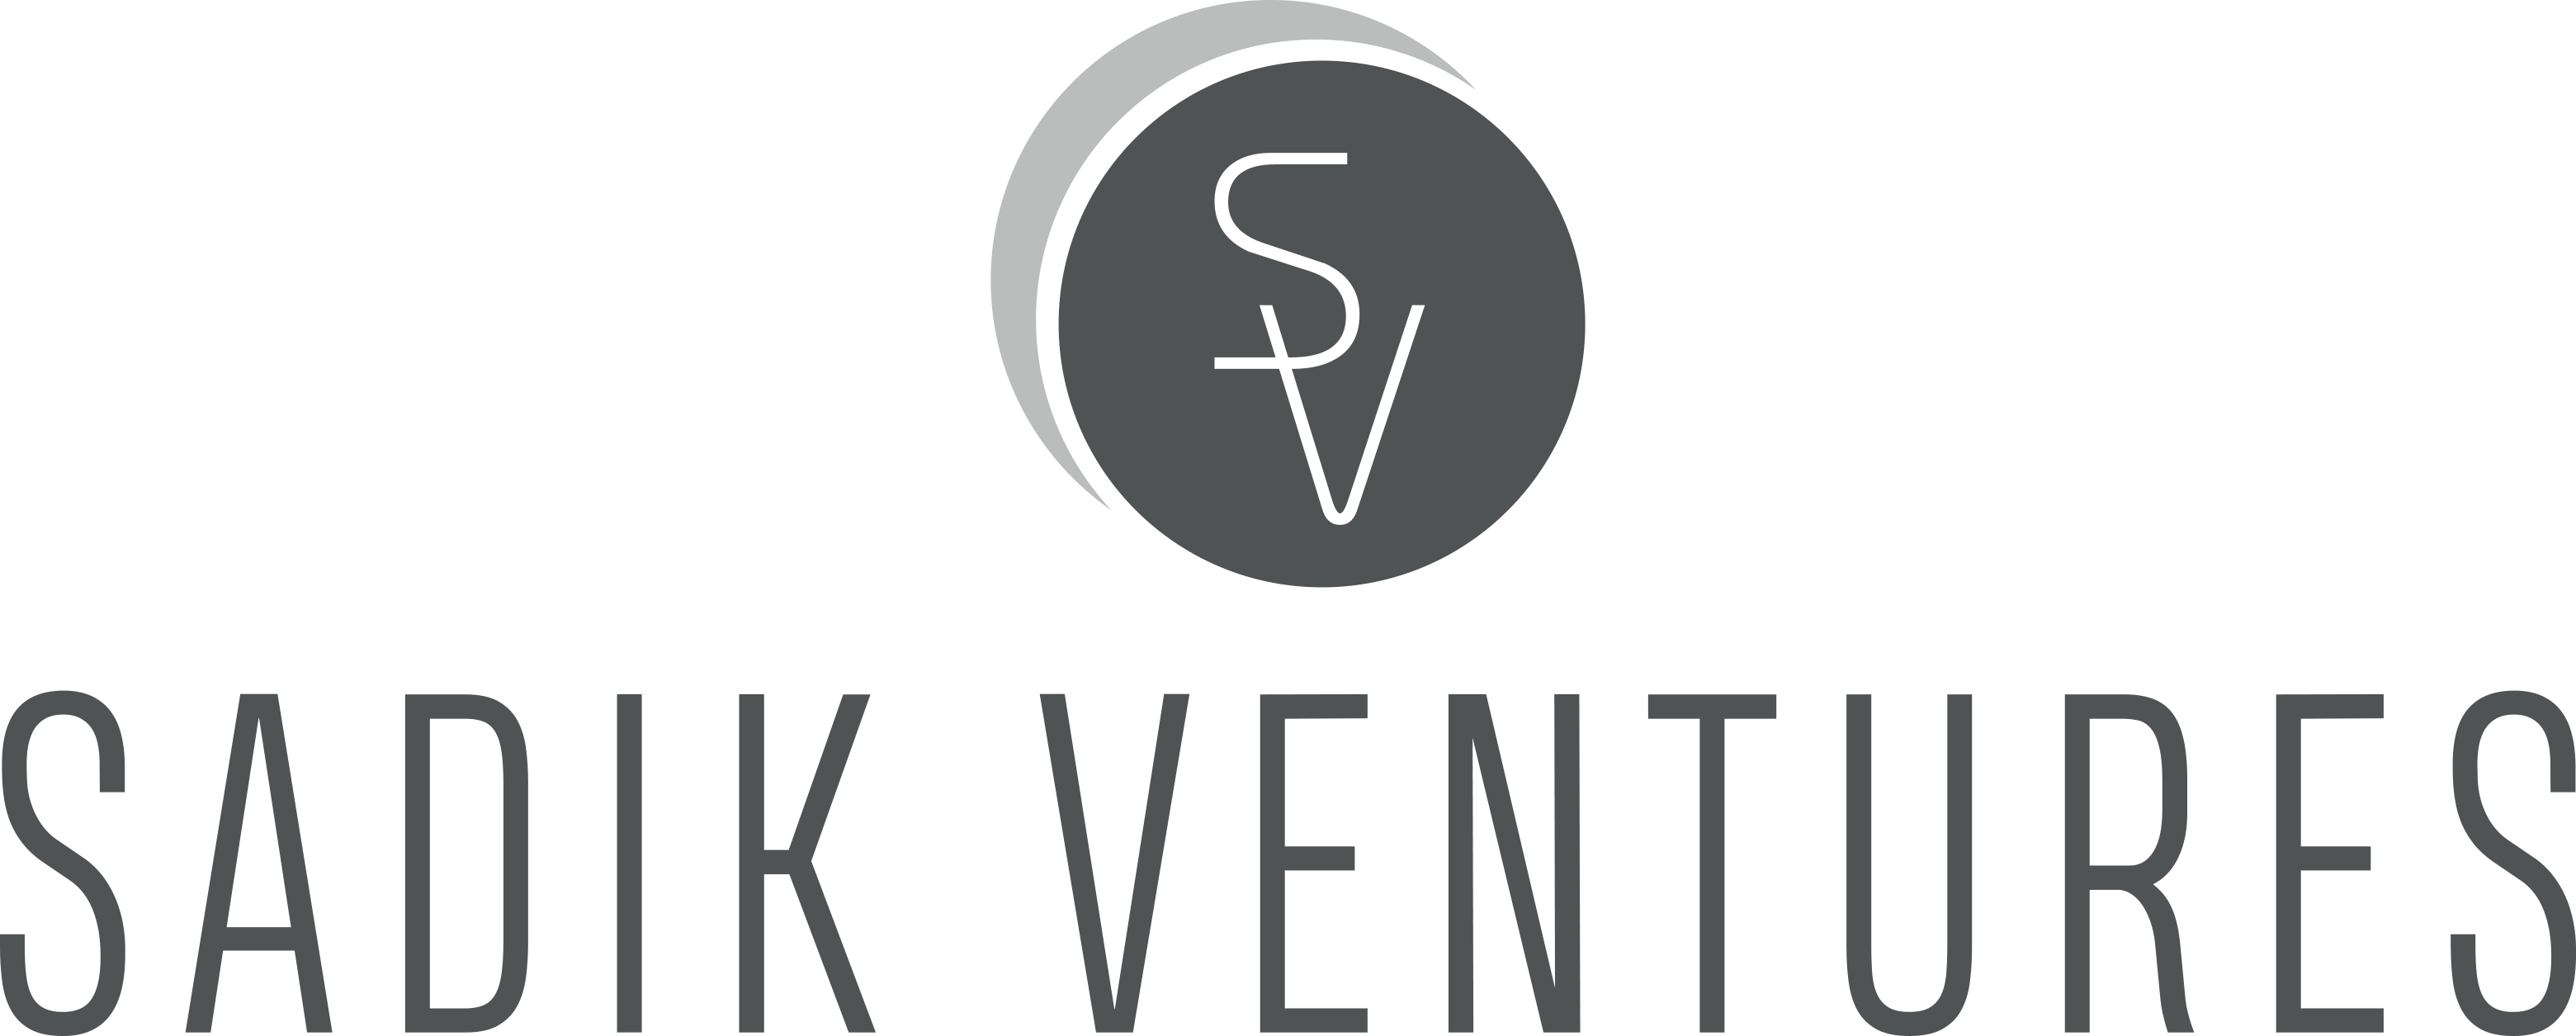 Contact - Sadık Ventures